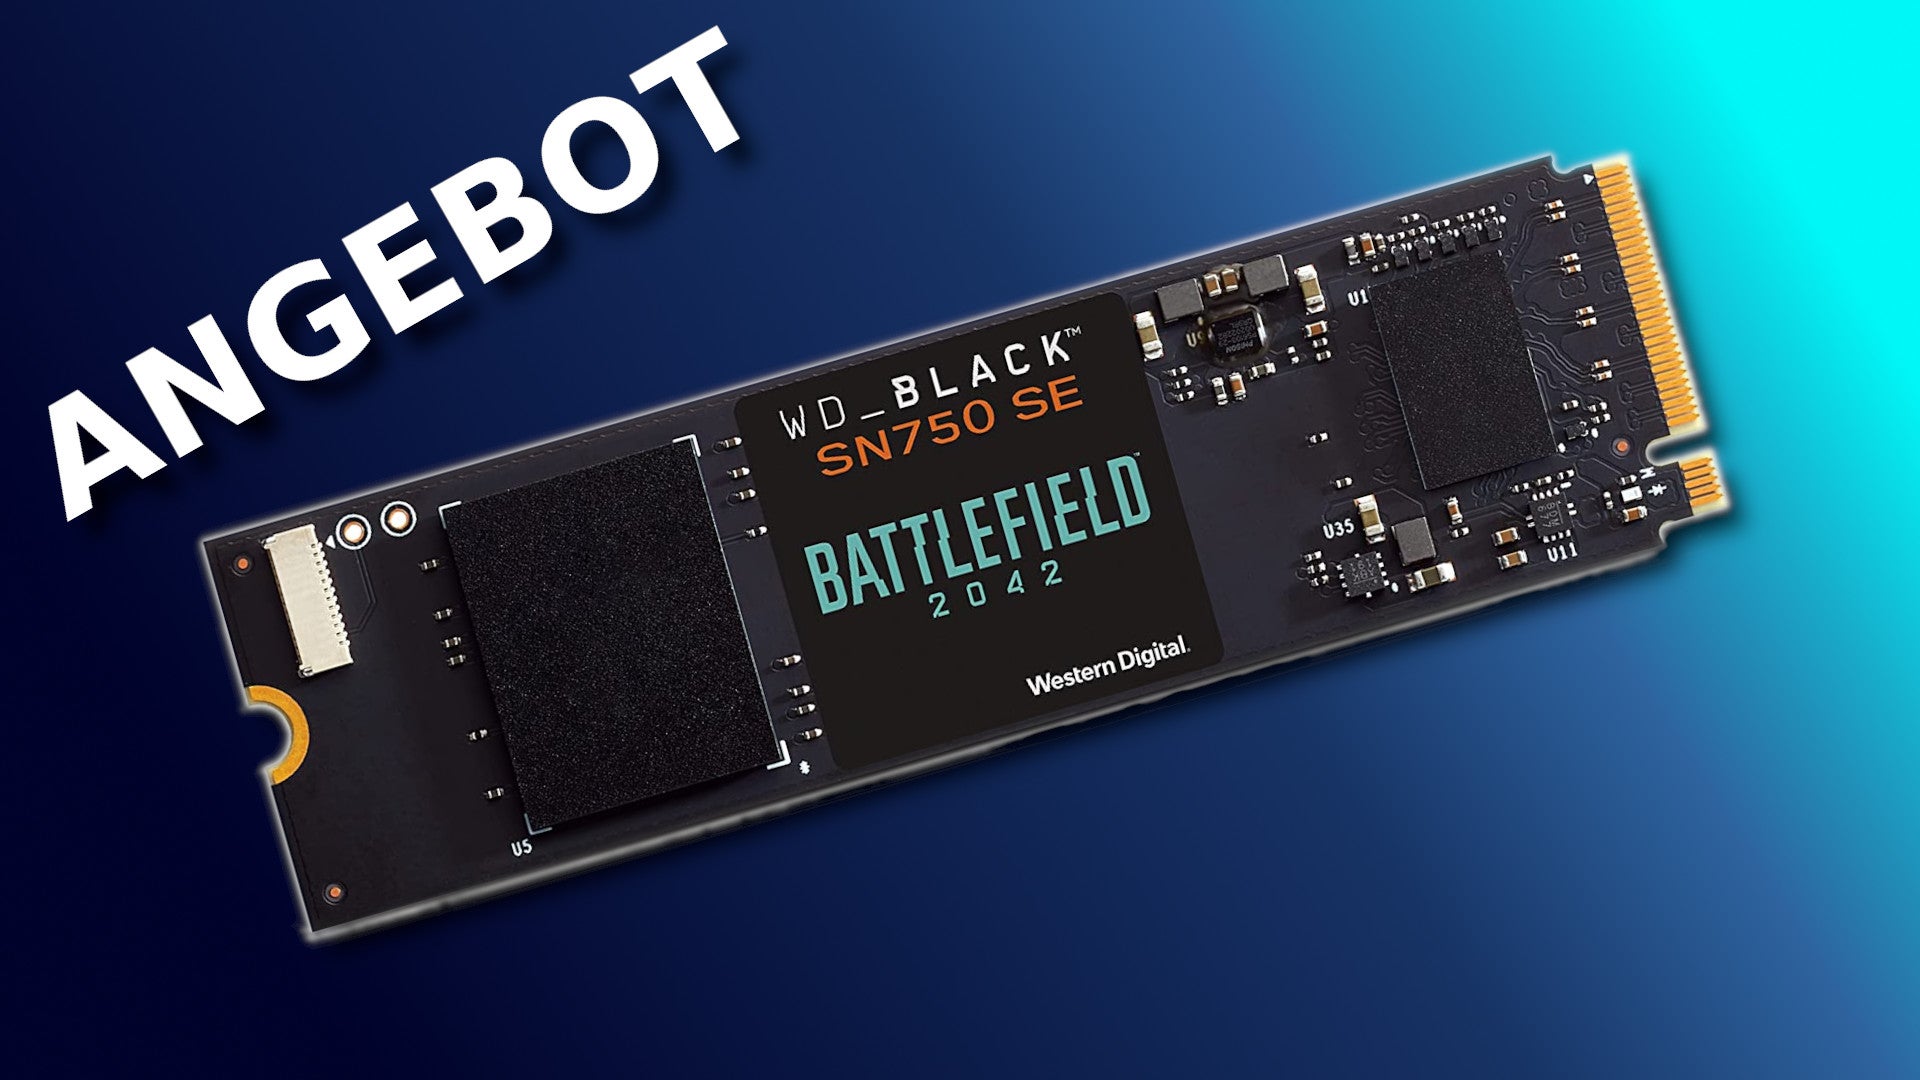 Bilder zu WD 1 TB SSD mit Battlefield 2042 für PC im Angebot: Spart jetzt 60 Euro